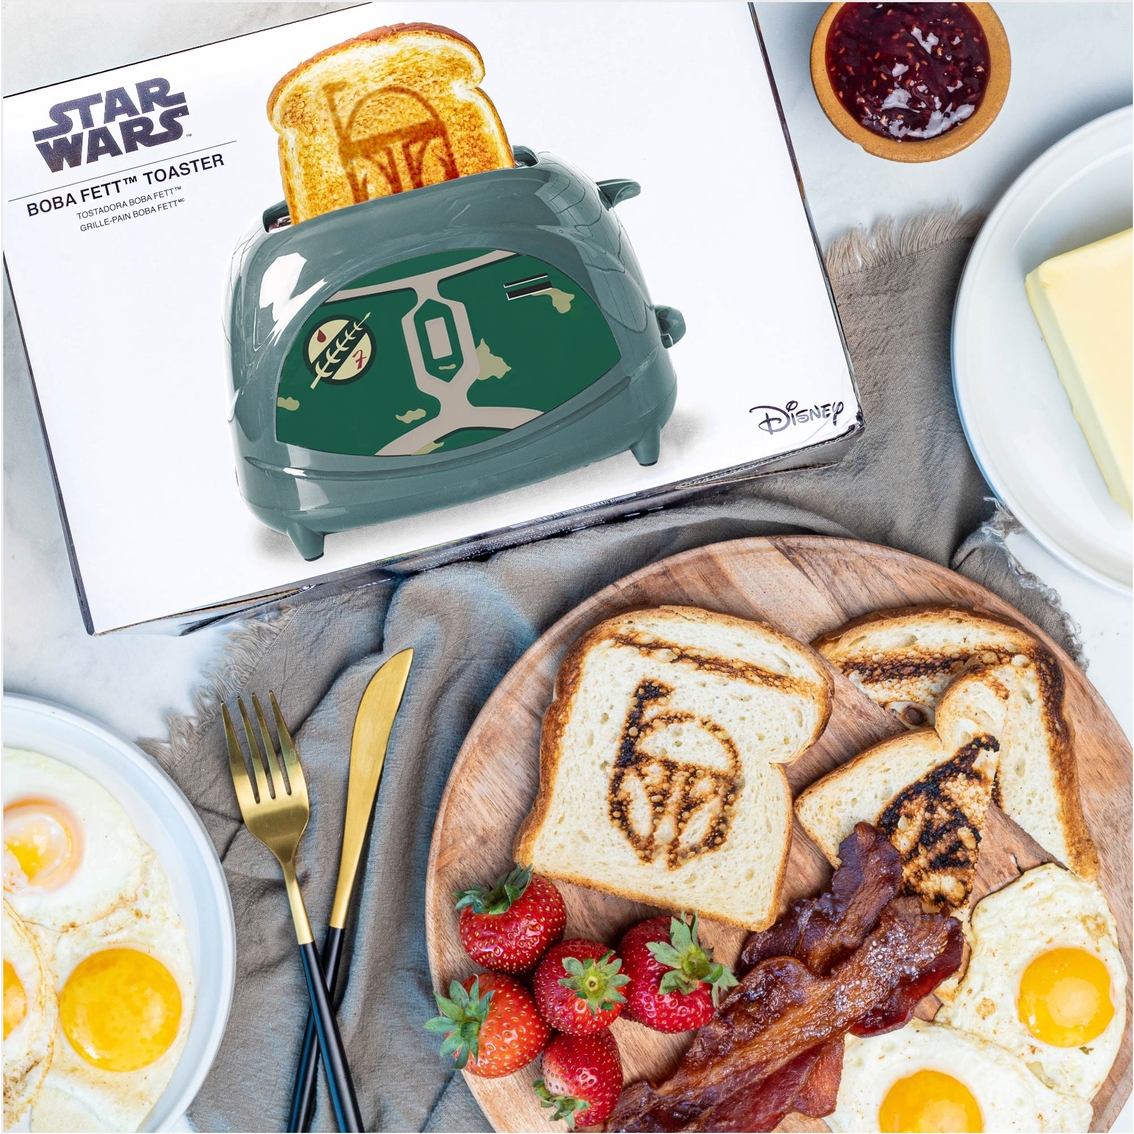 Star Wars Boba Fett Empire Toaster - Image 3 of 3